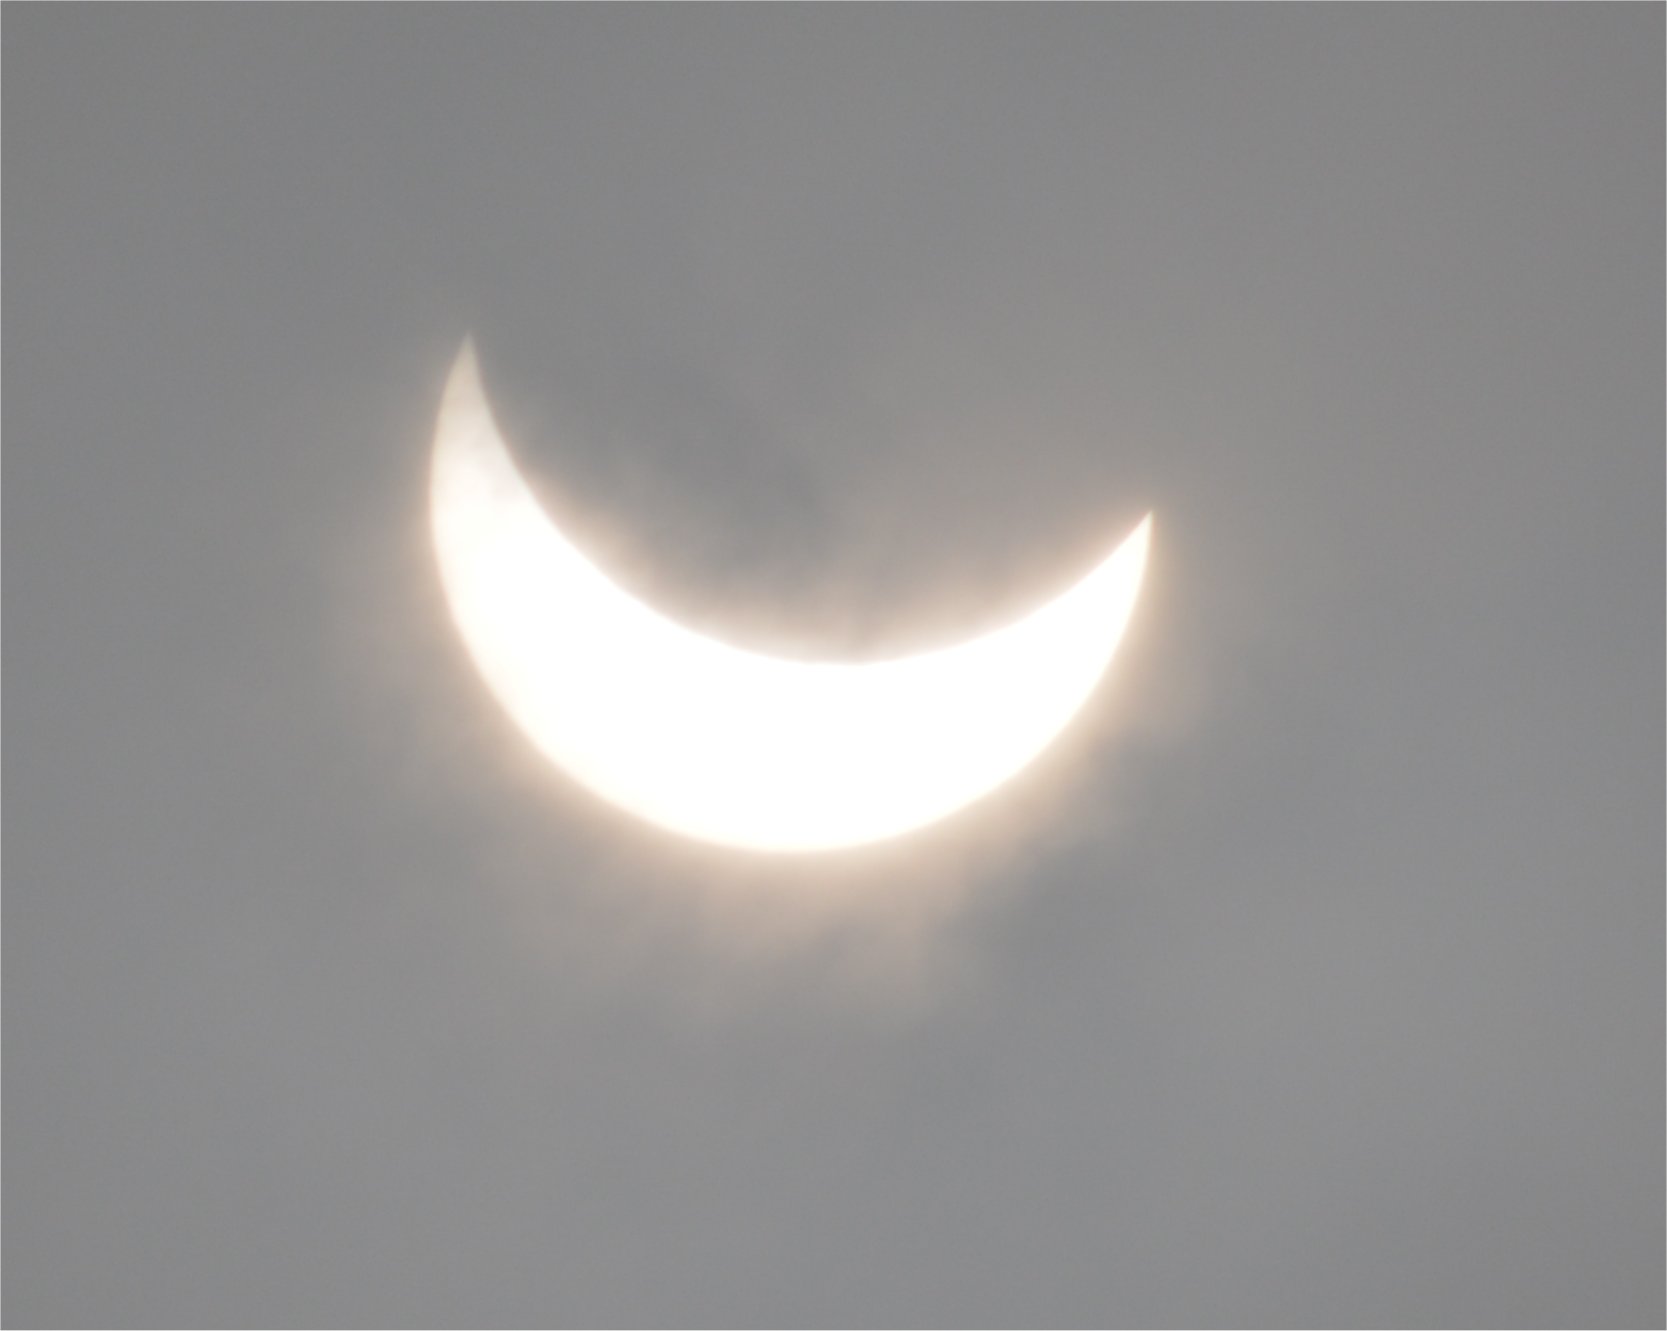 Nom : eclipse.jpg
Affichages : 61
Taille : 84,4 Ko